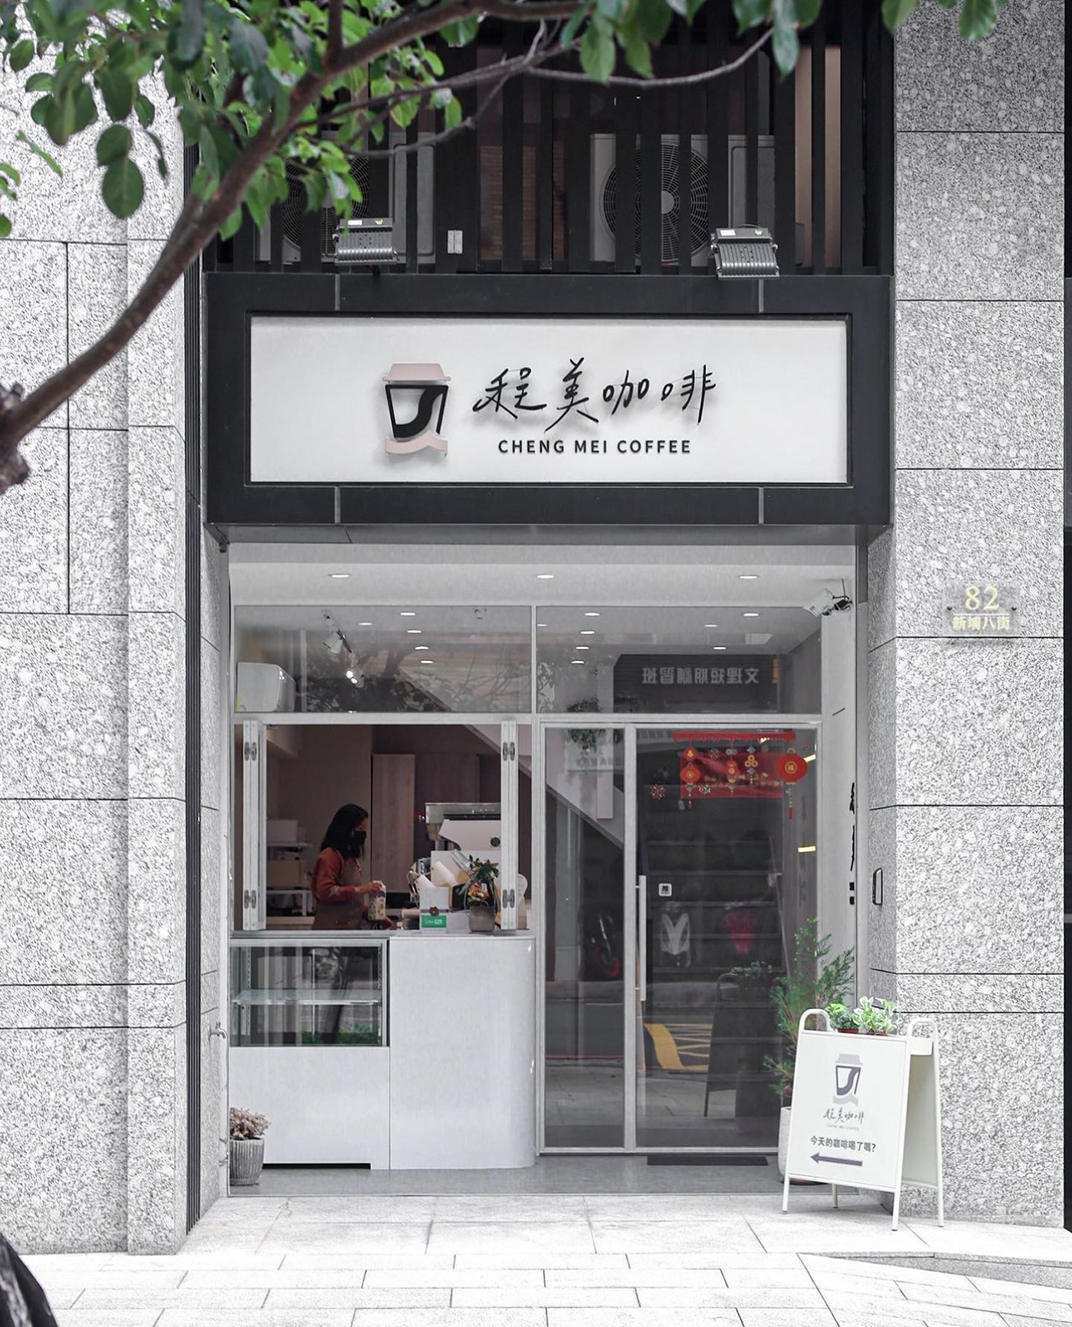 咖啡店程美咖啡CHENG MEI COFFEE 台湾 北京 上海 珠海 广州 武汉 杭州 佛山 香港 澳门 logo设计 vi设计 空间设计